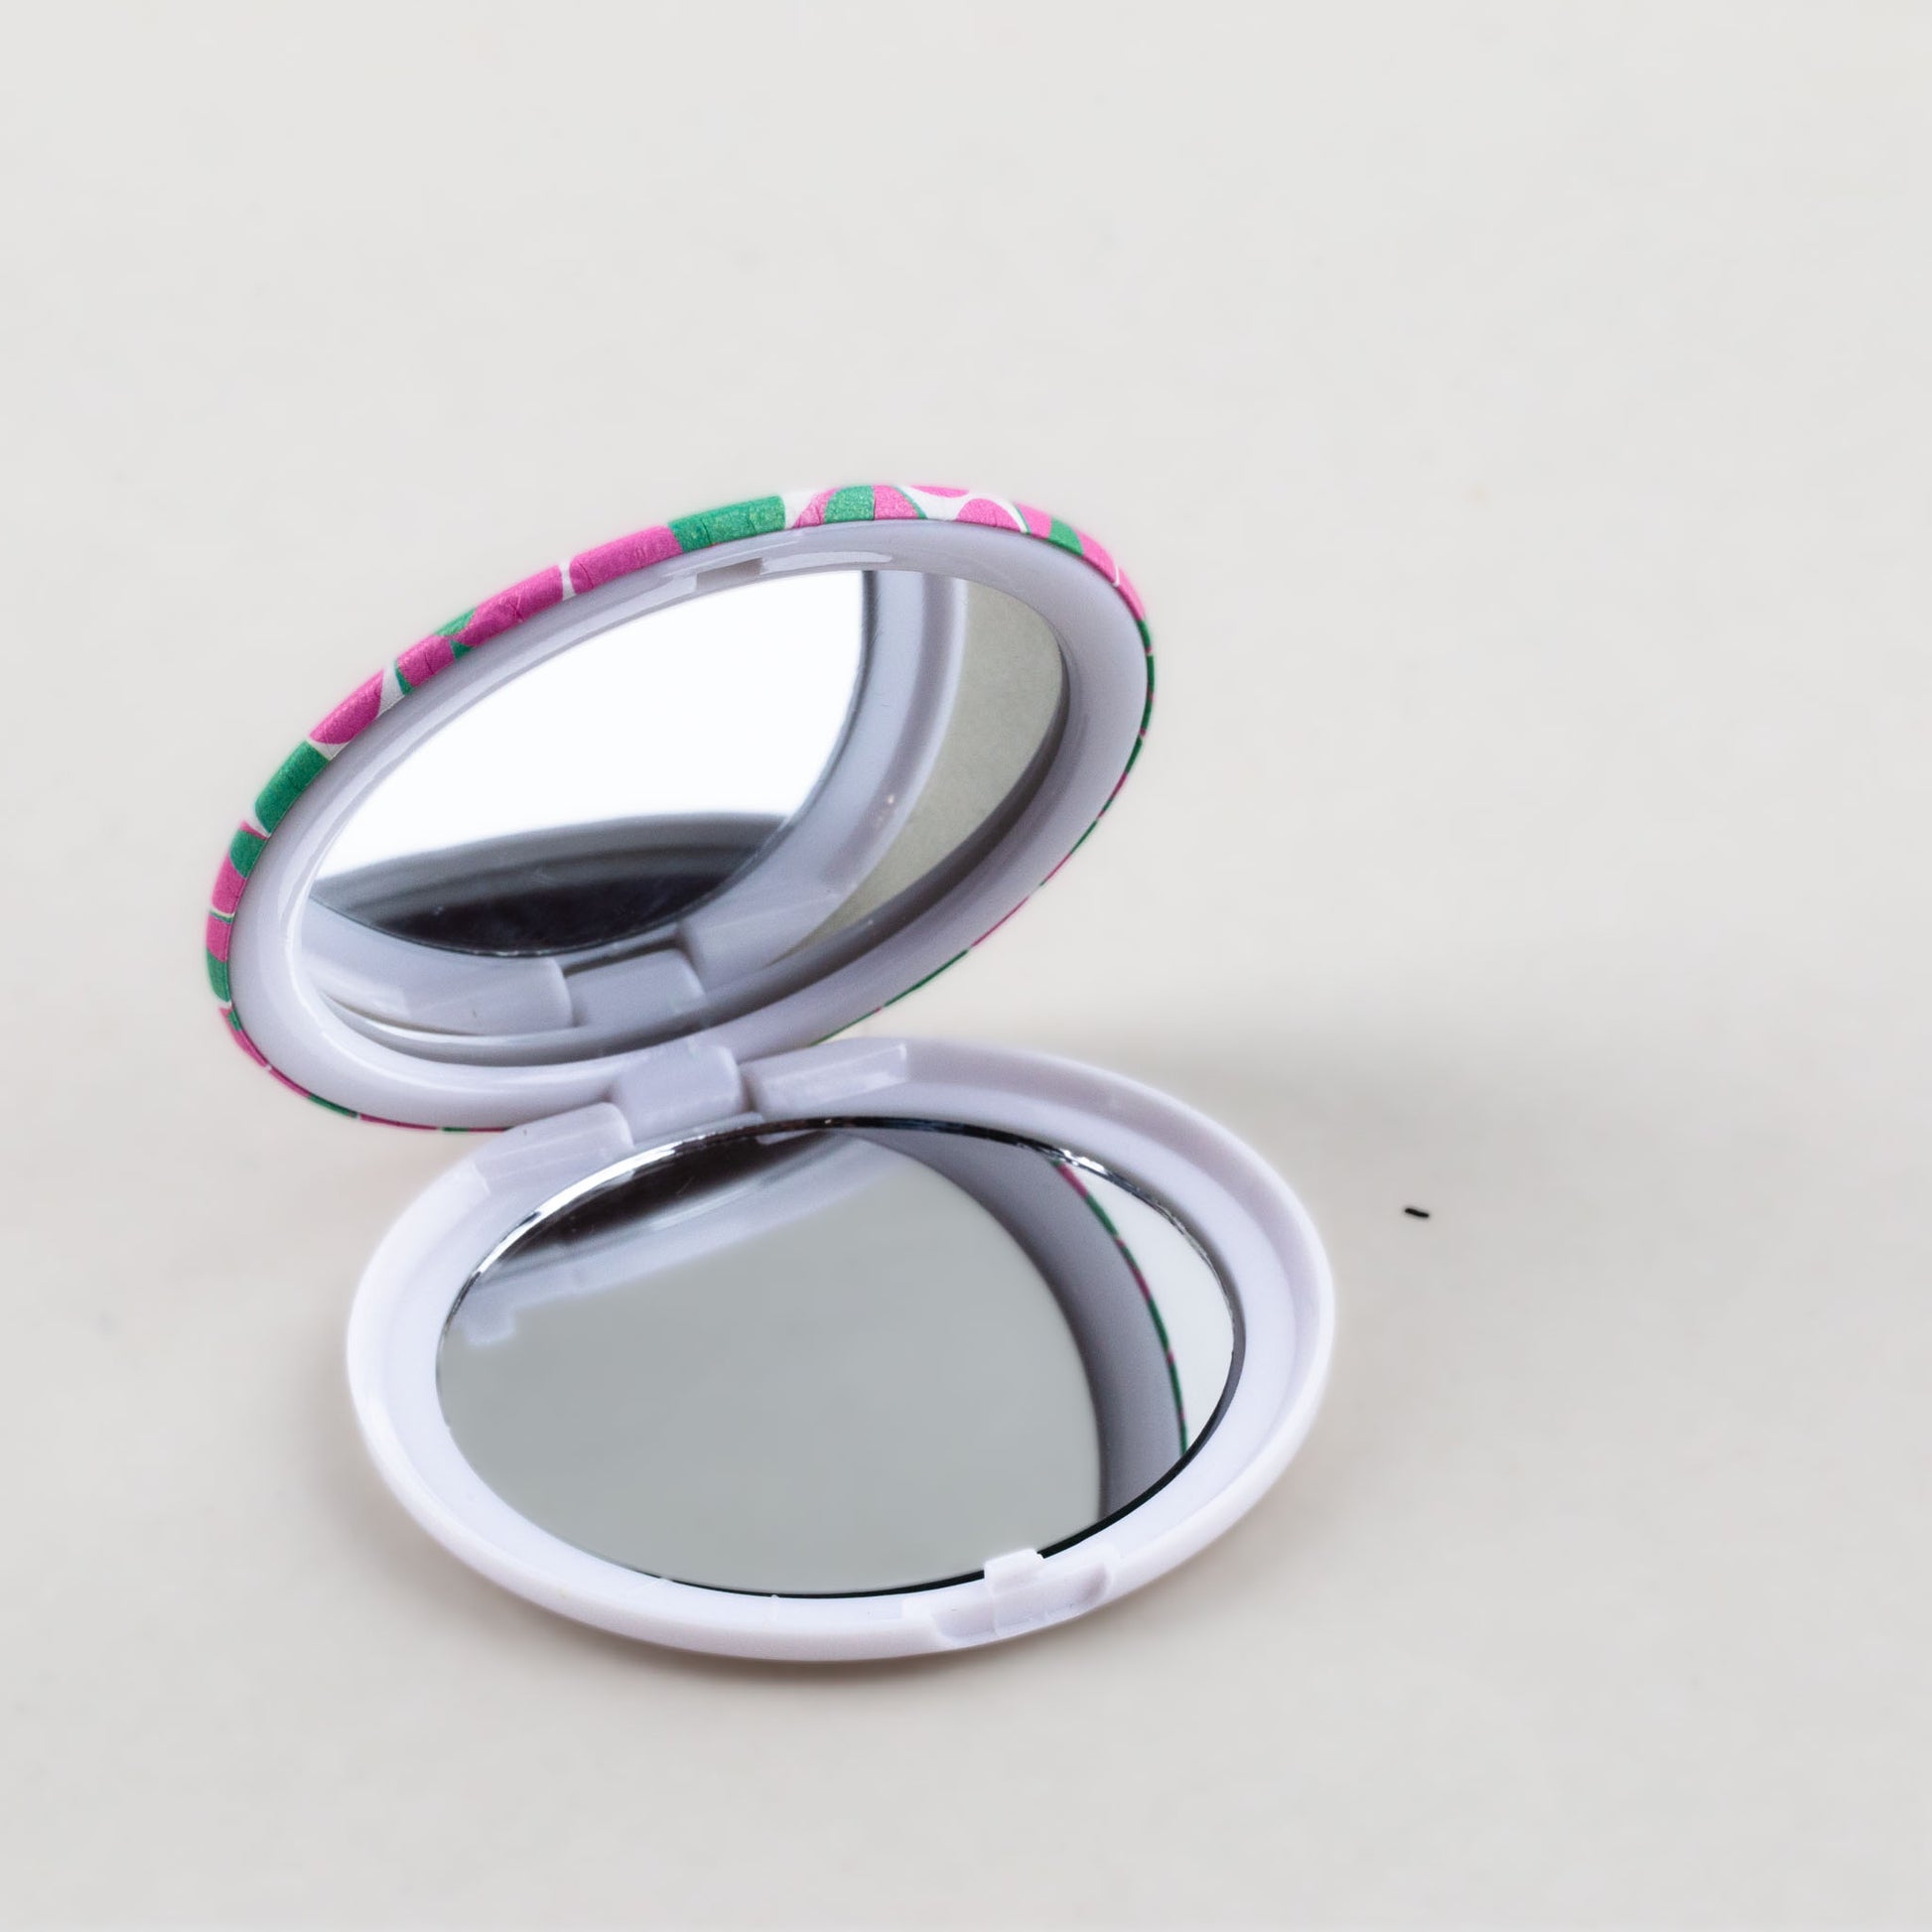 Oglindă de poșetă, formă rotundă cu 2 părți, model hearts - Colorful